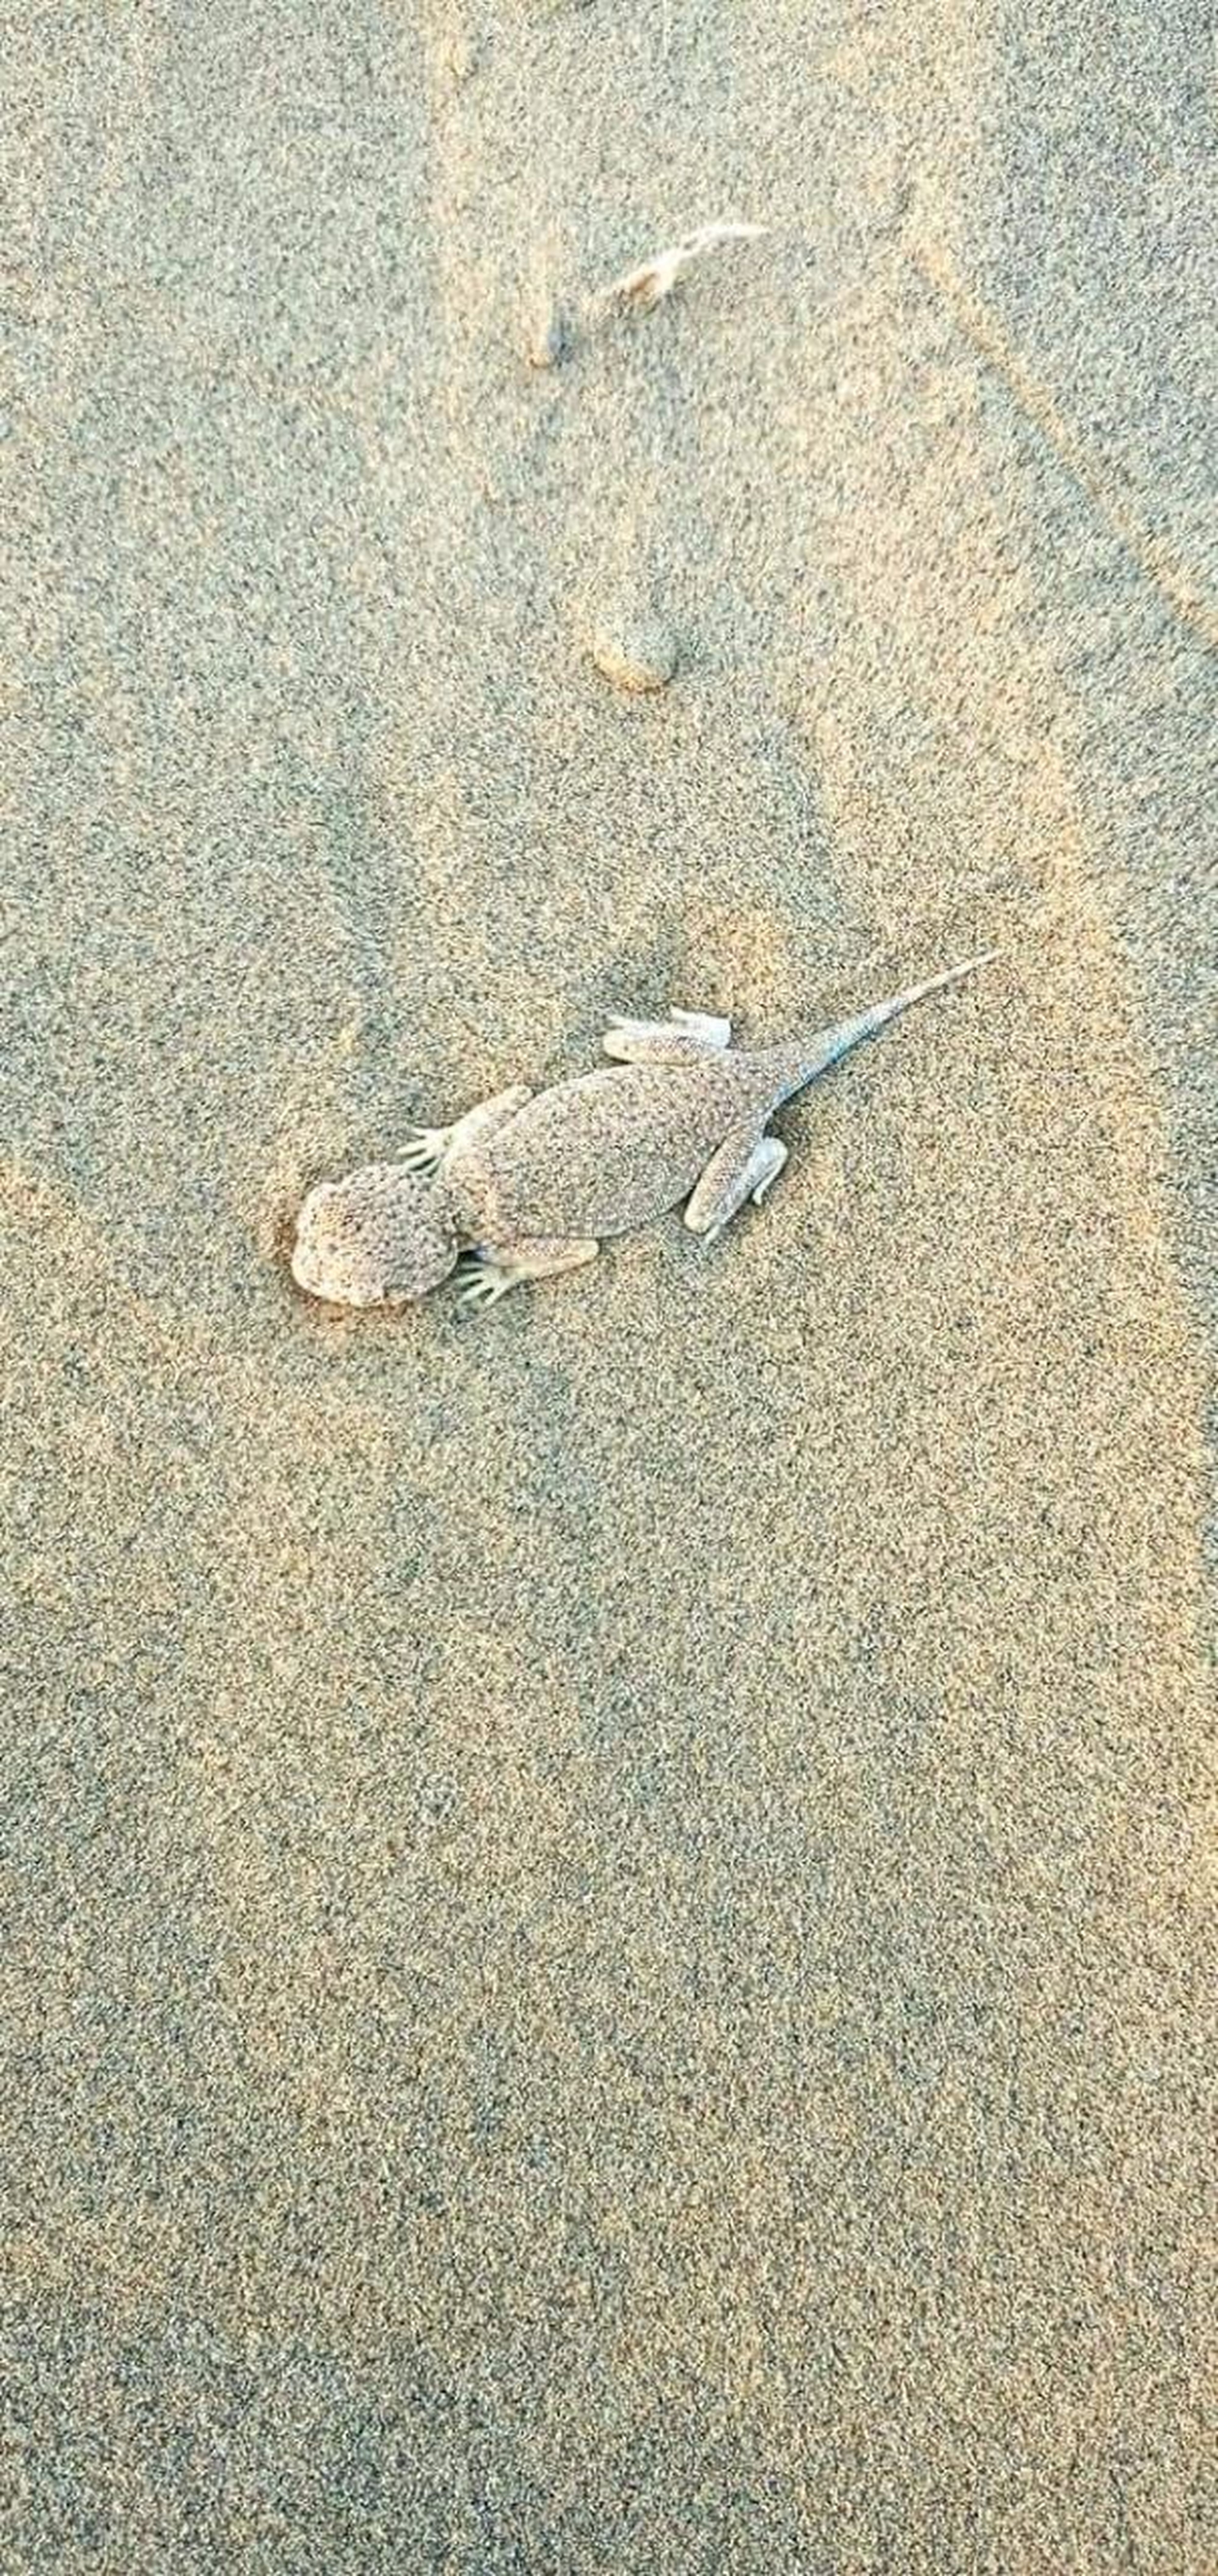 रेत के समंदर के बीच छिपा मरुस्थलीय जीवों का छलावरण